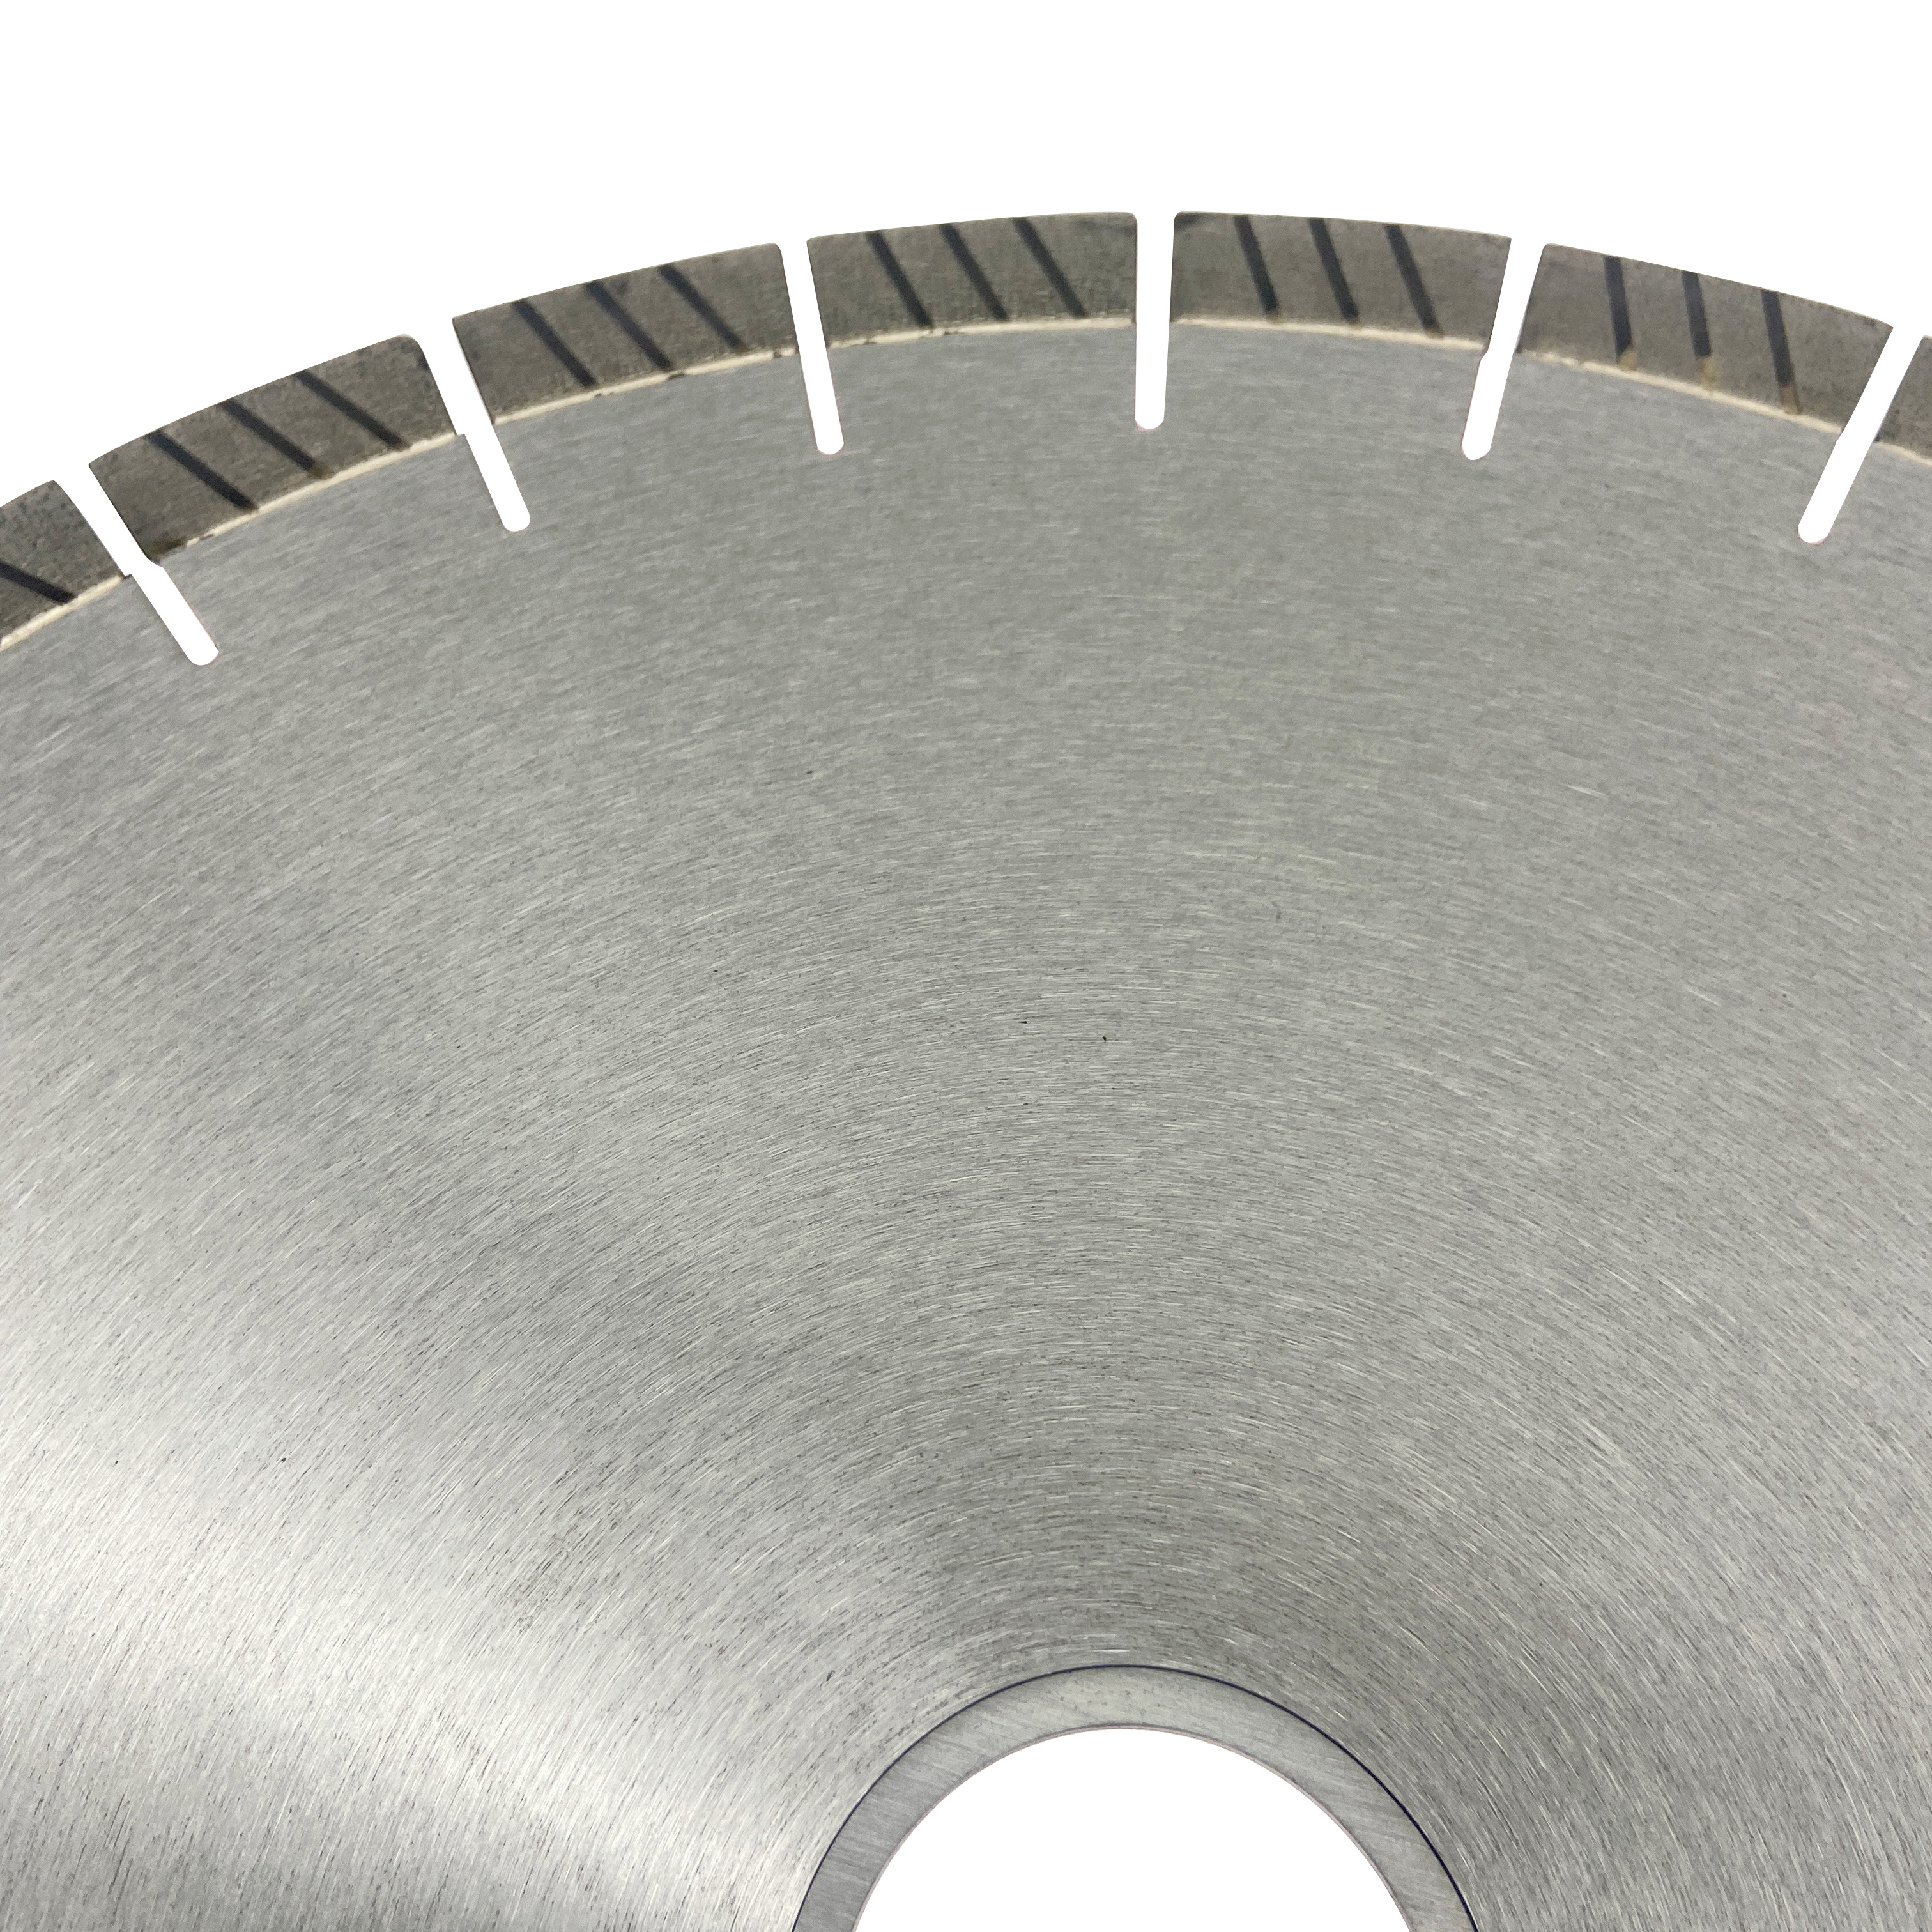 16 дюймов 400*20*60/50 мм серебряные паяные сегменты arix turbo бесшумный стальной сердечник инструменты алмазный дисковый пильный диск для резки твердого гранита